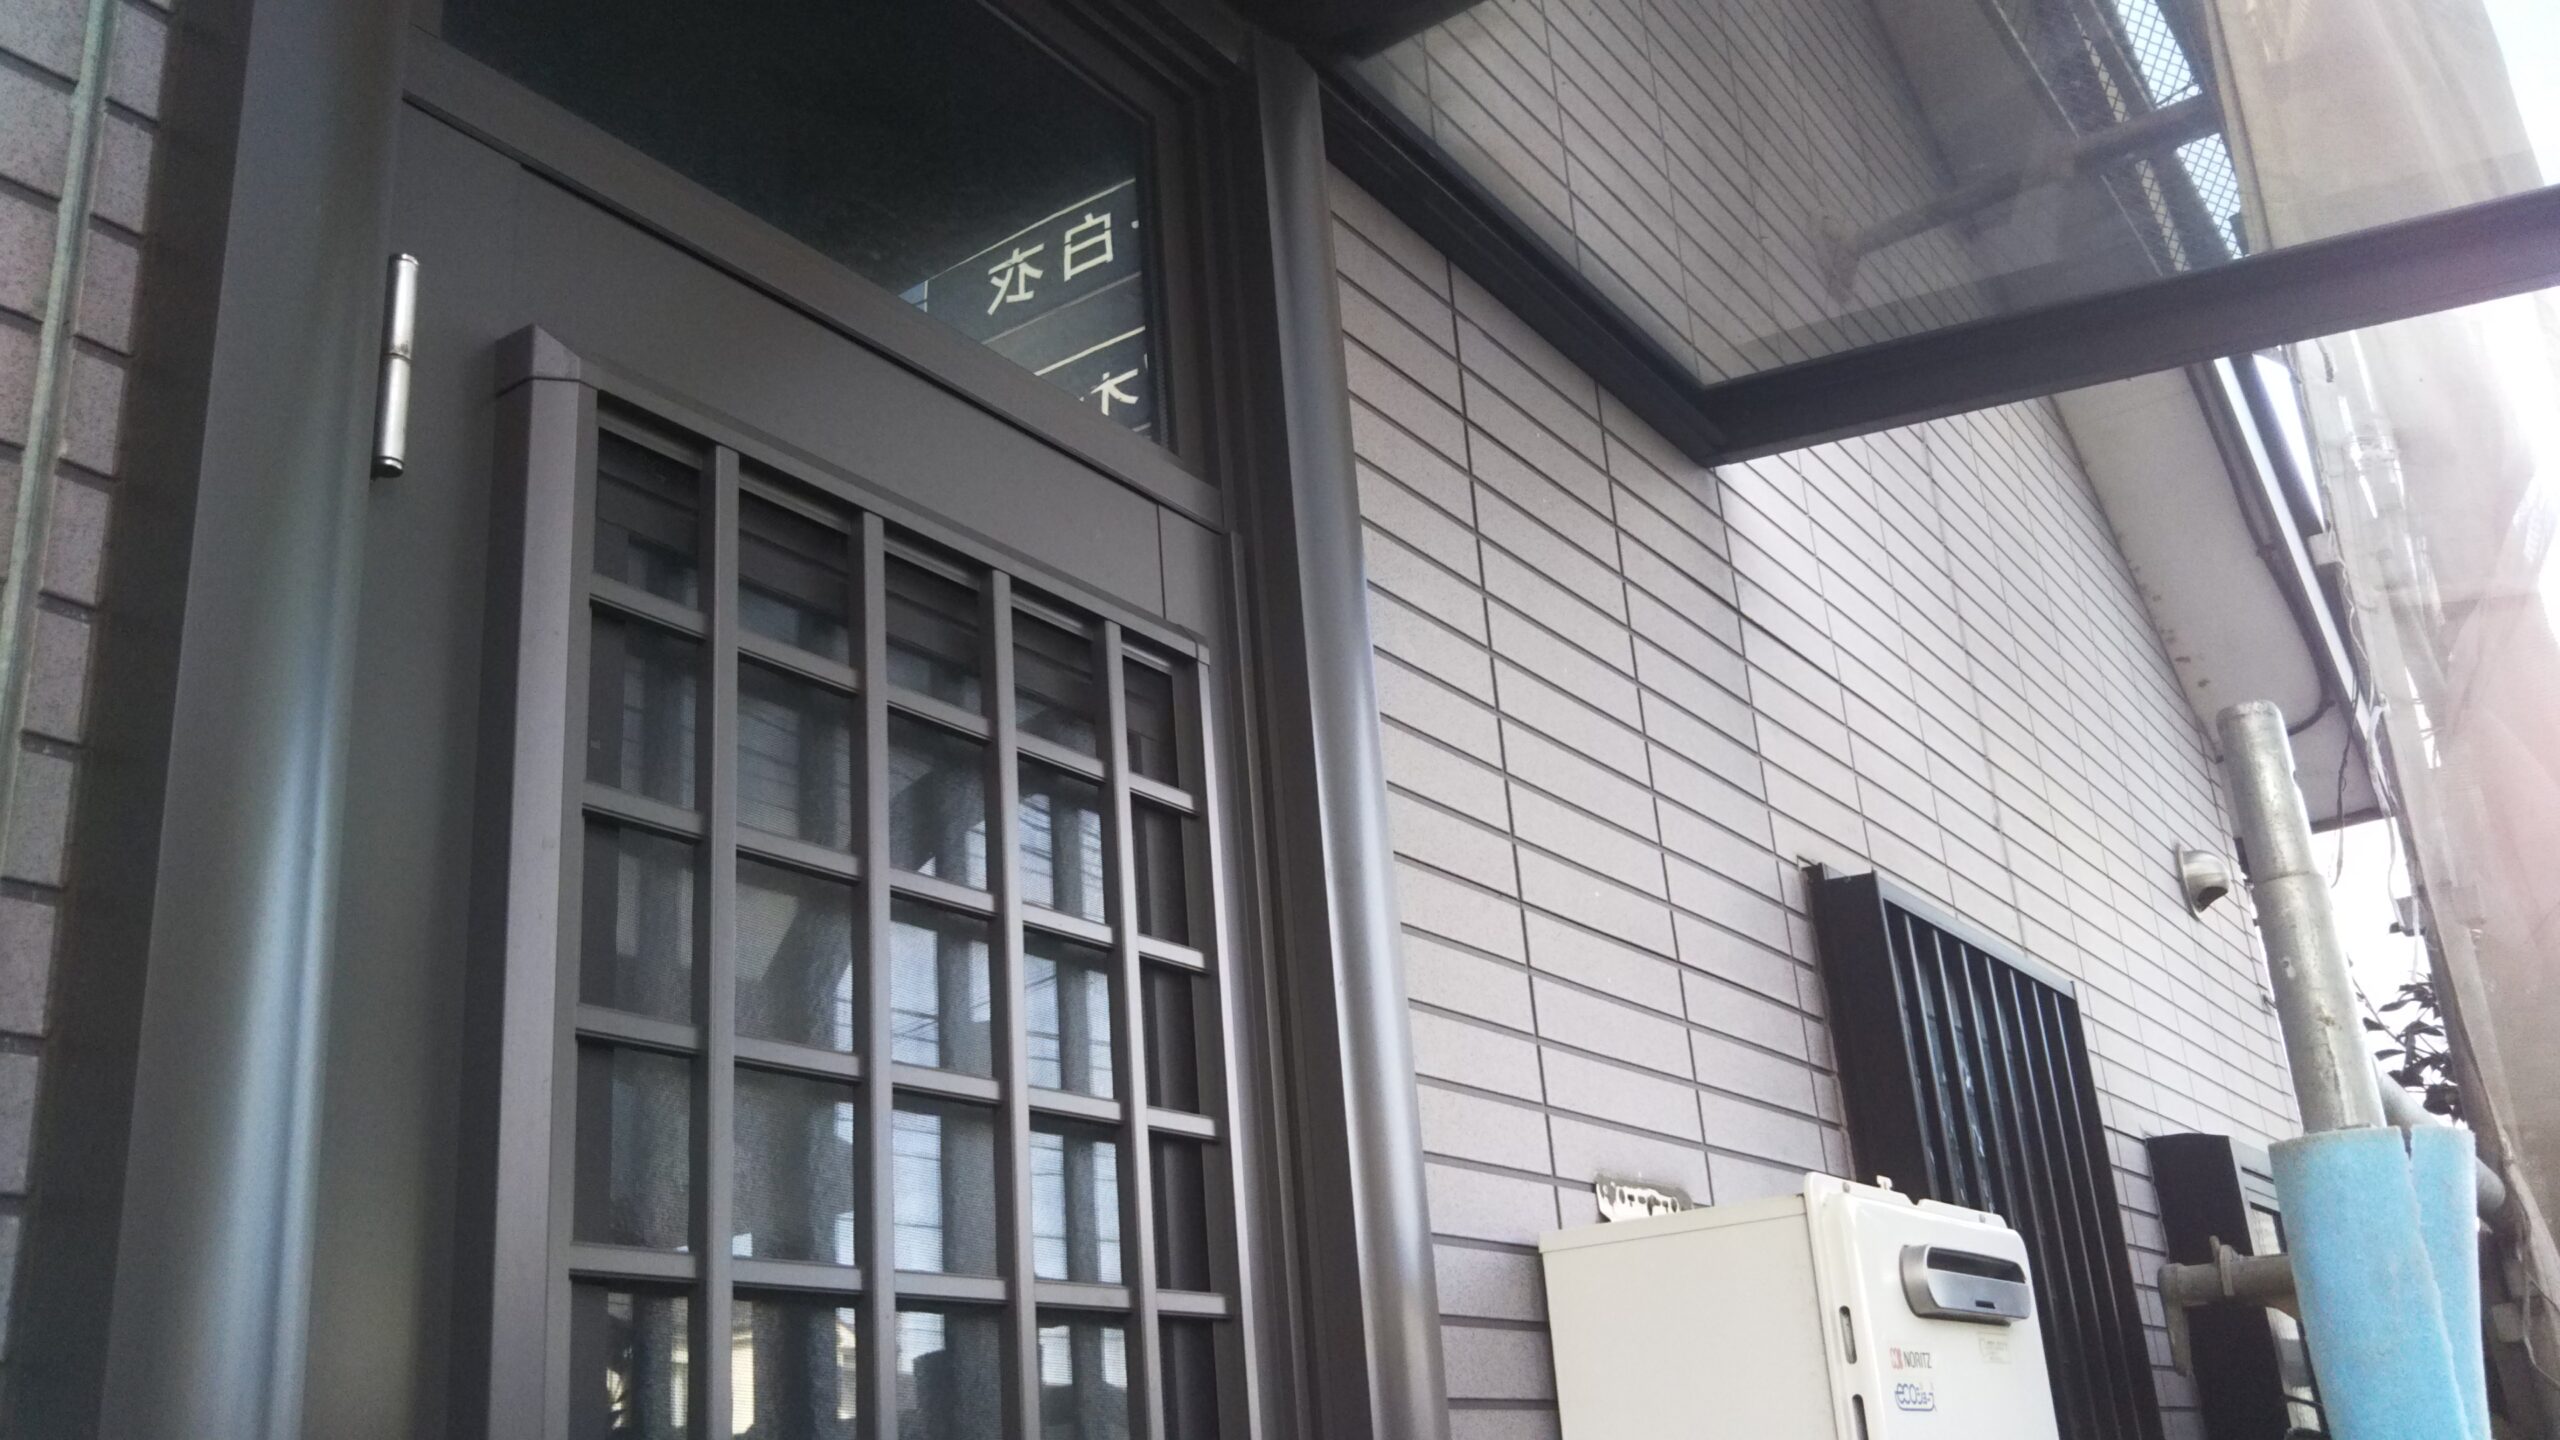 埼玉県さいたま市緑区のY様邸（木造1階建て）にて外壁の高圧洗浄とコーキング撤去